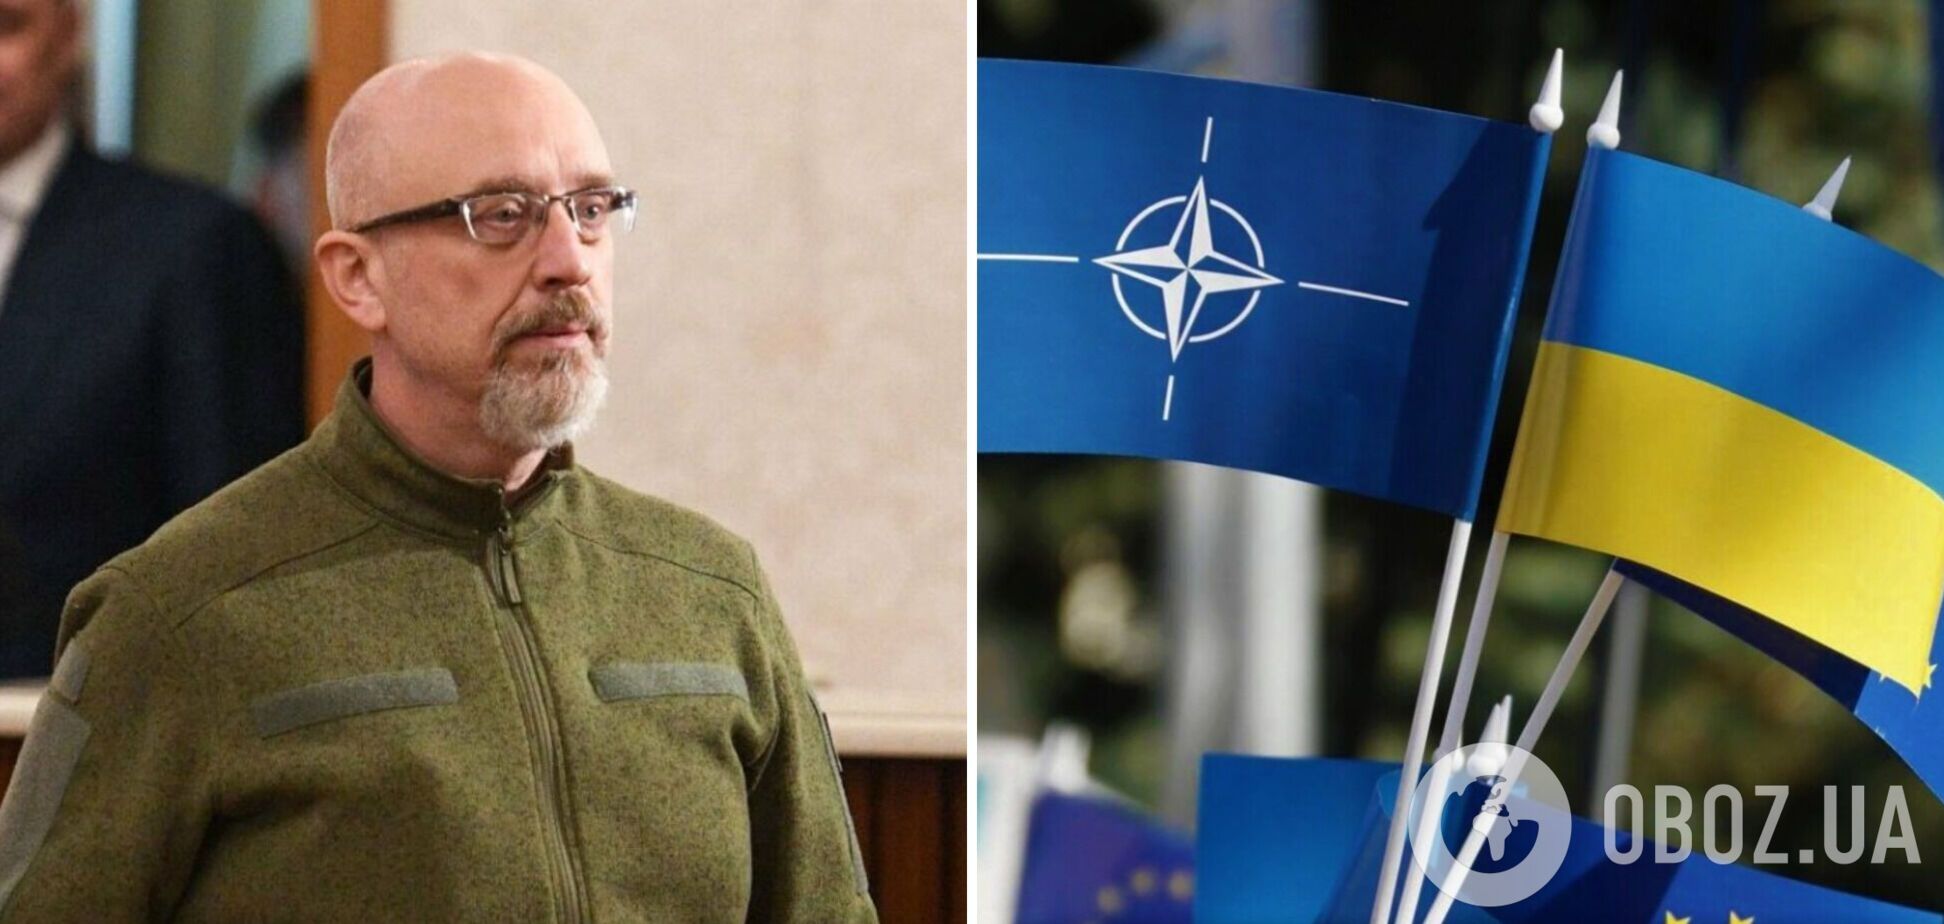 Оборонные закупки в Украине переводят на стандарты НАТО